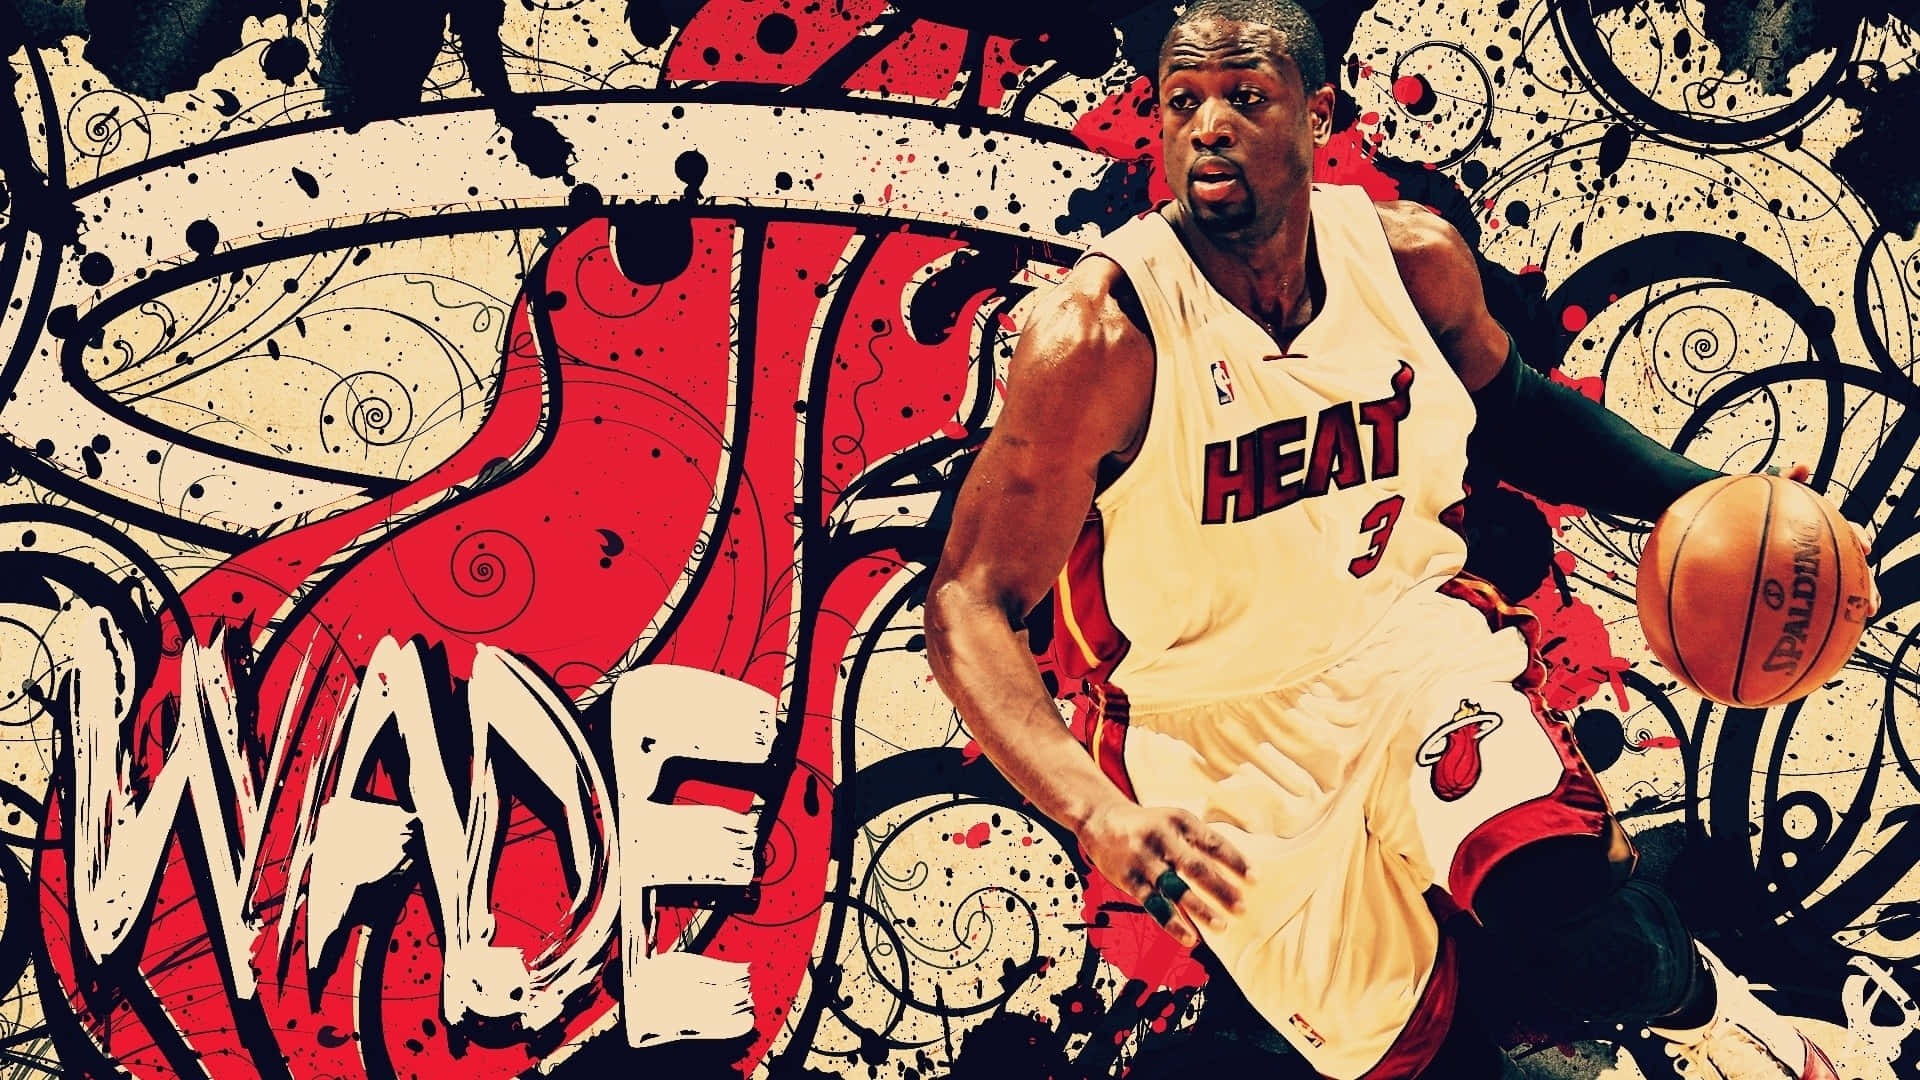 Nbaspelaren Dwayne Wade Från Miami Heat. Wallpaper